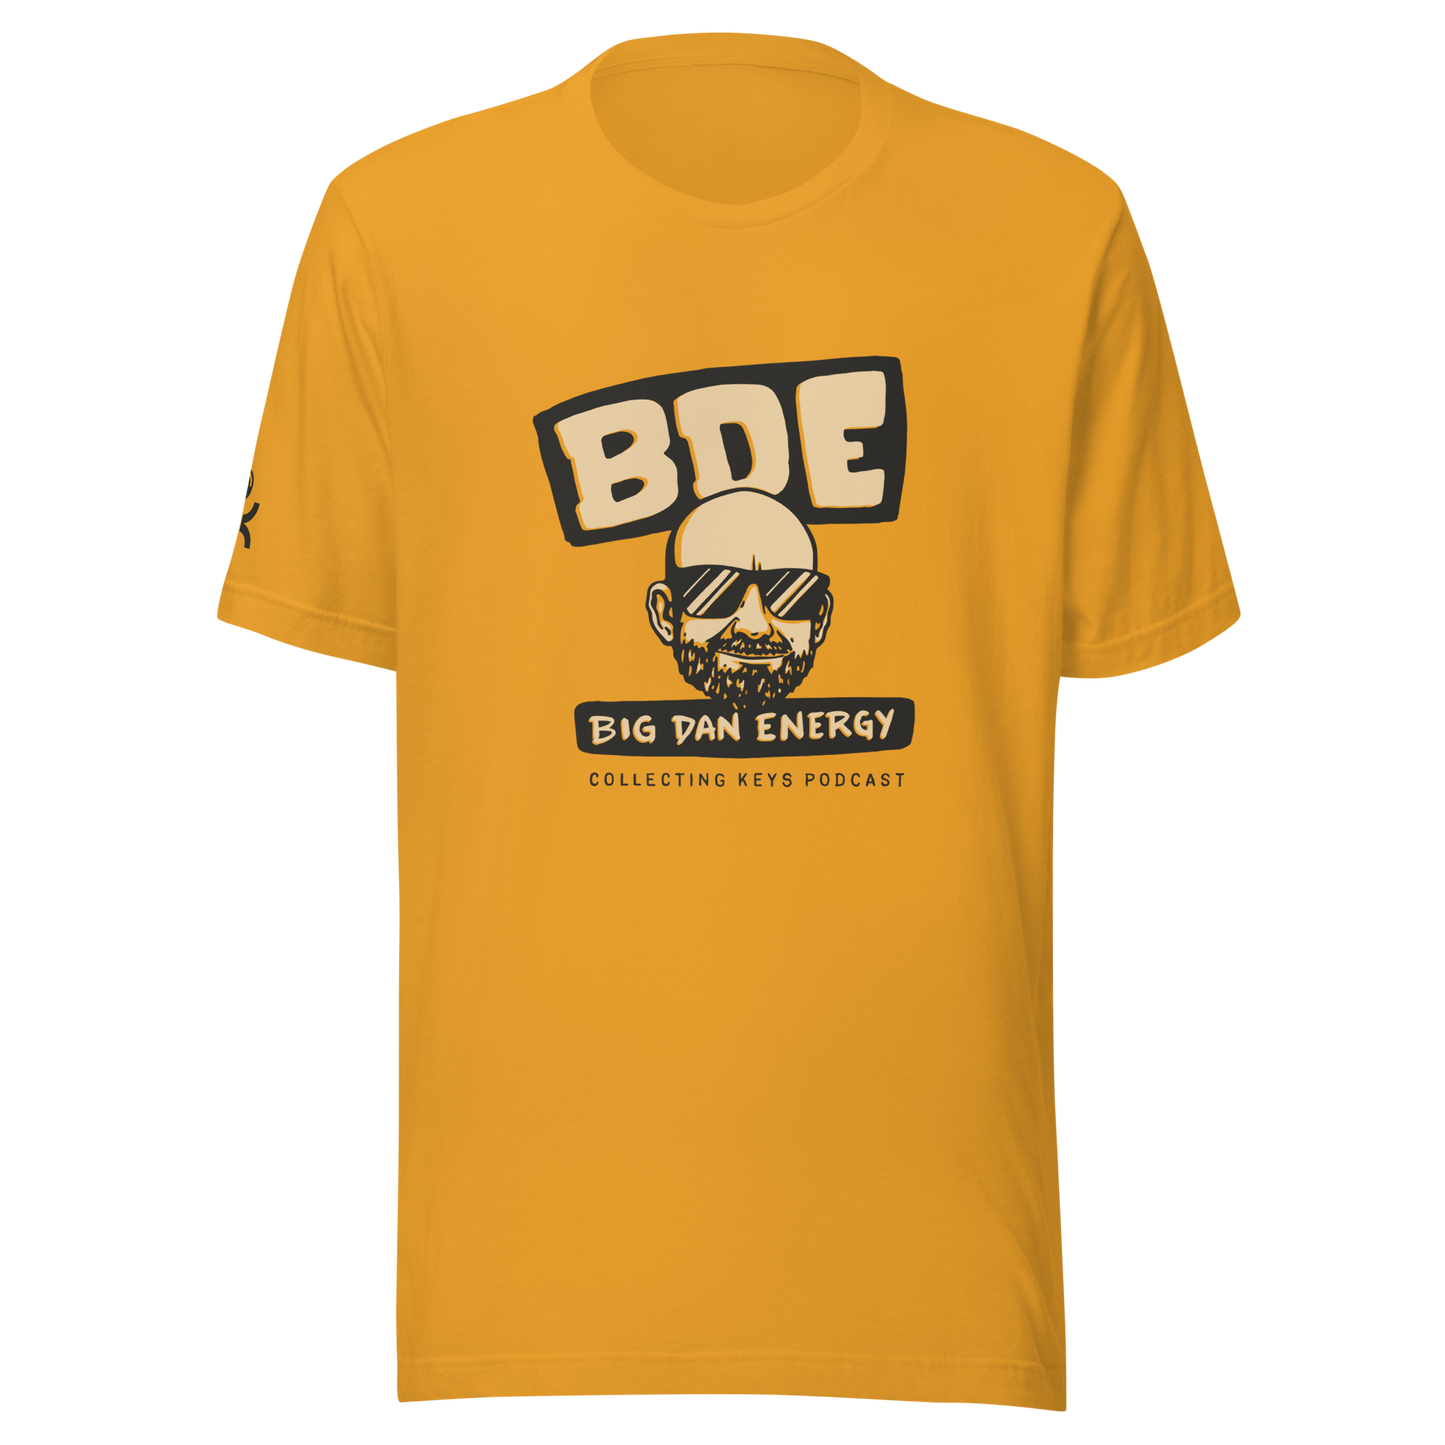 Big Dan Energy #BDE - T-Shirt